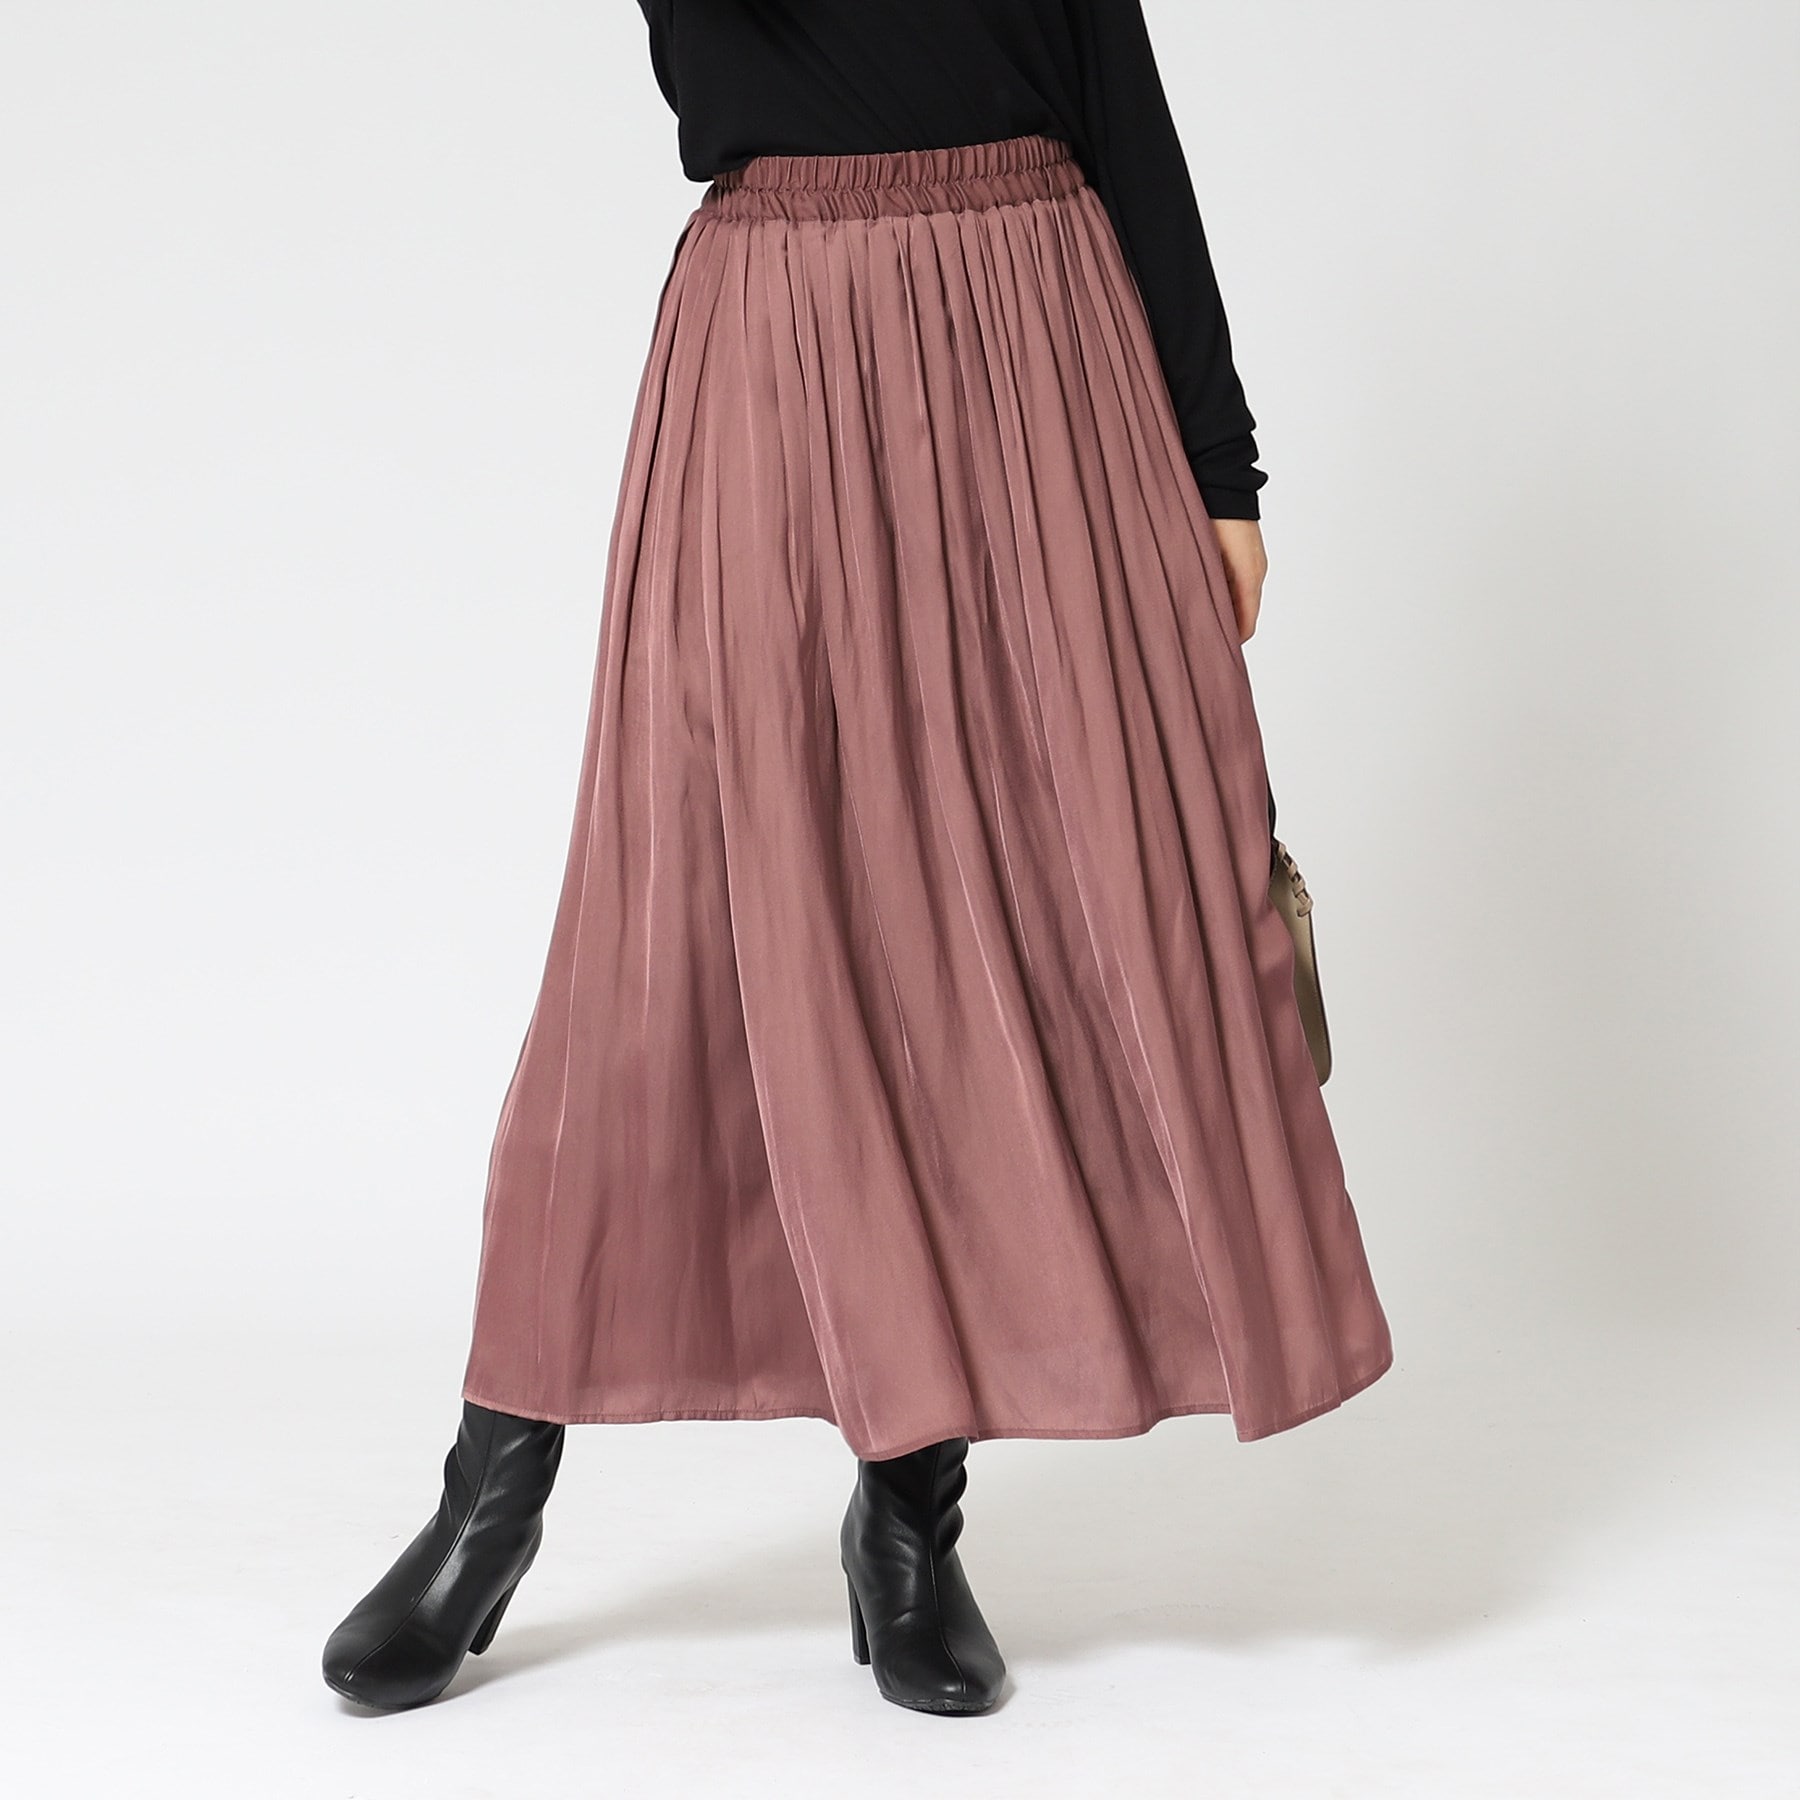 シューラルー/ドレスキップ(SHOO・LA・RUE/DRESKIP)の女性らしさあふれる サテンギャザースカート12